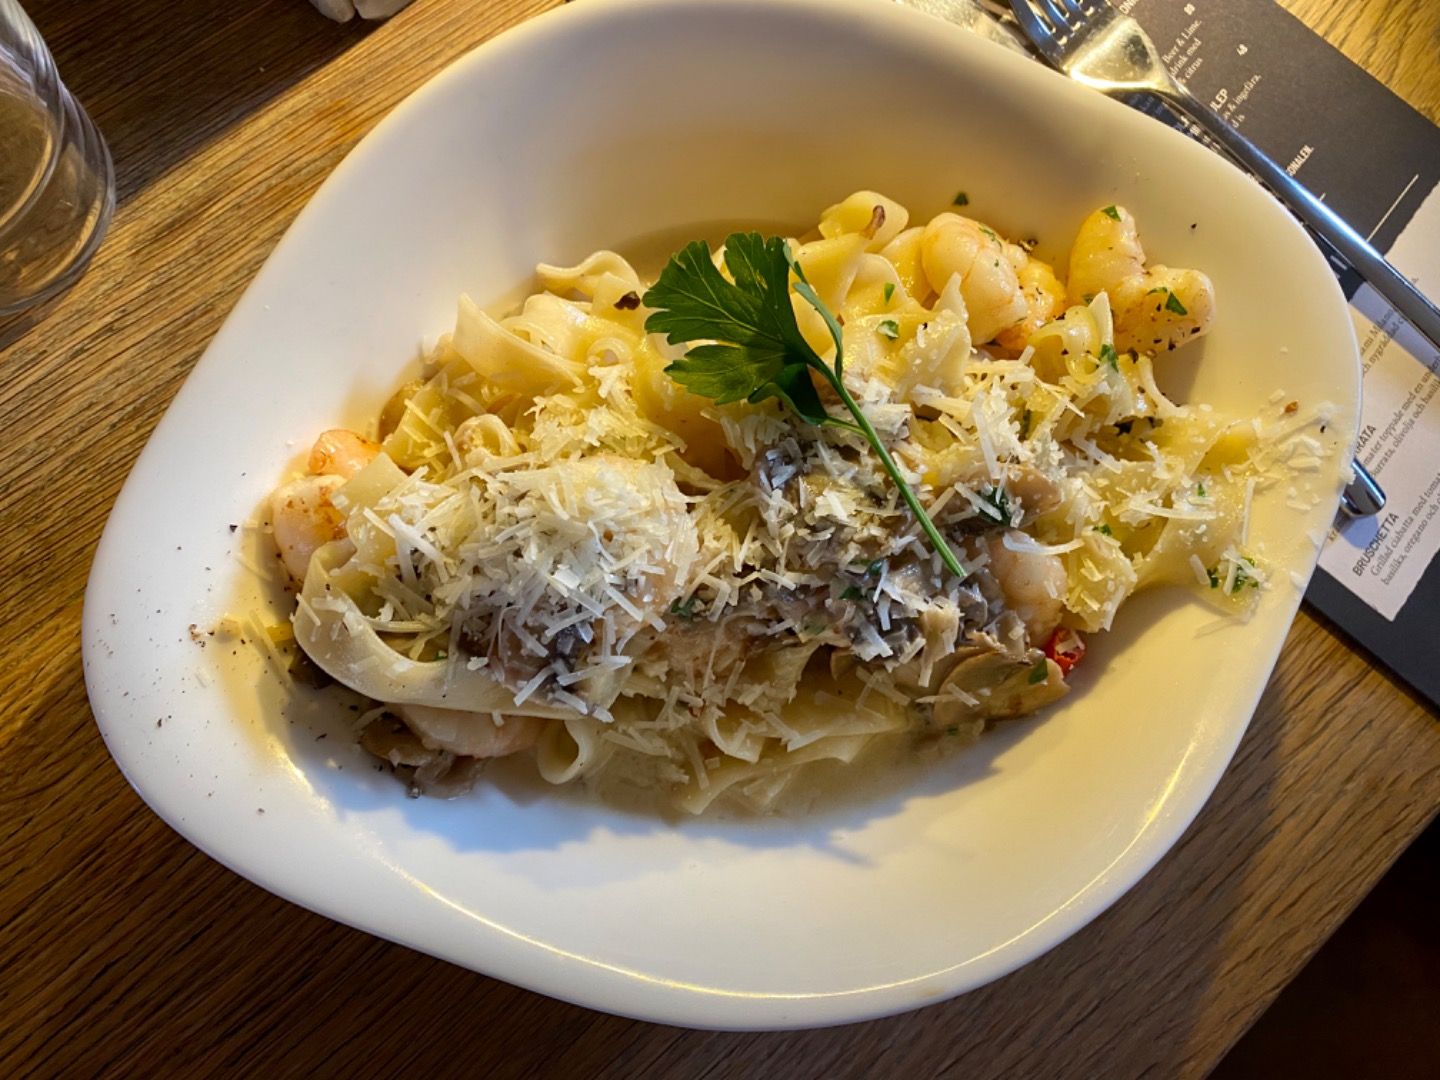 My pasta med scampi och väldigt mycket vitlök  – Bild från Vapiano Kungsbron av Annelie V.